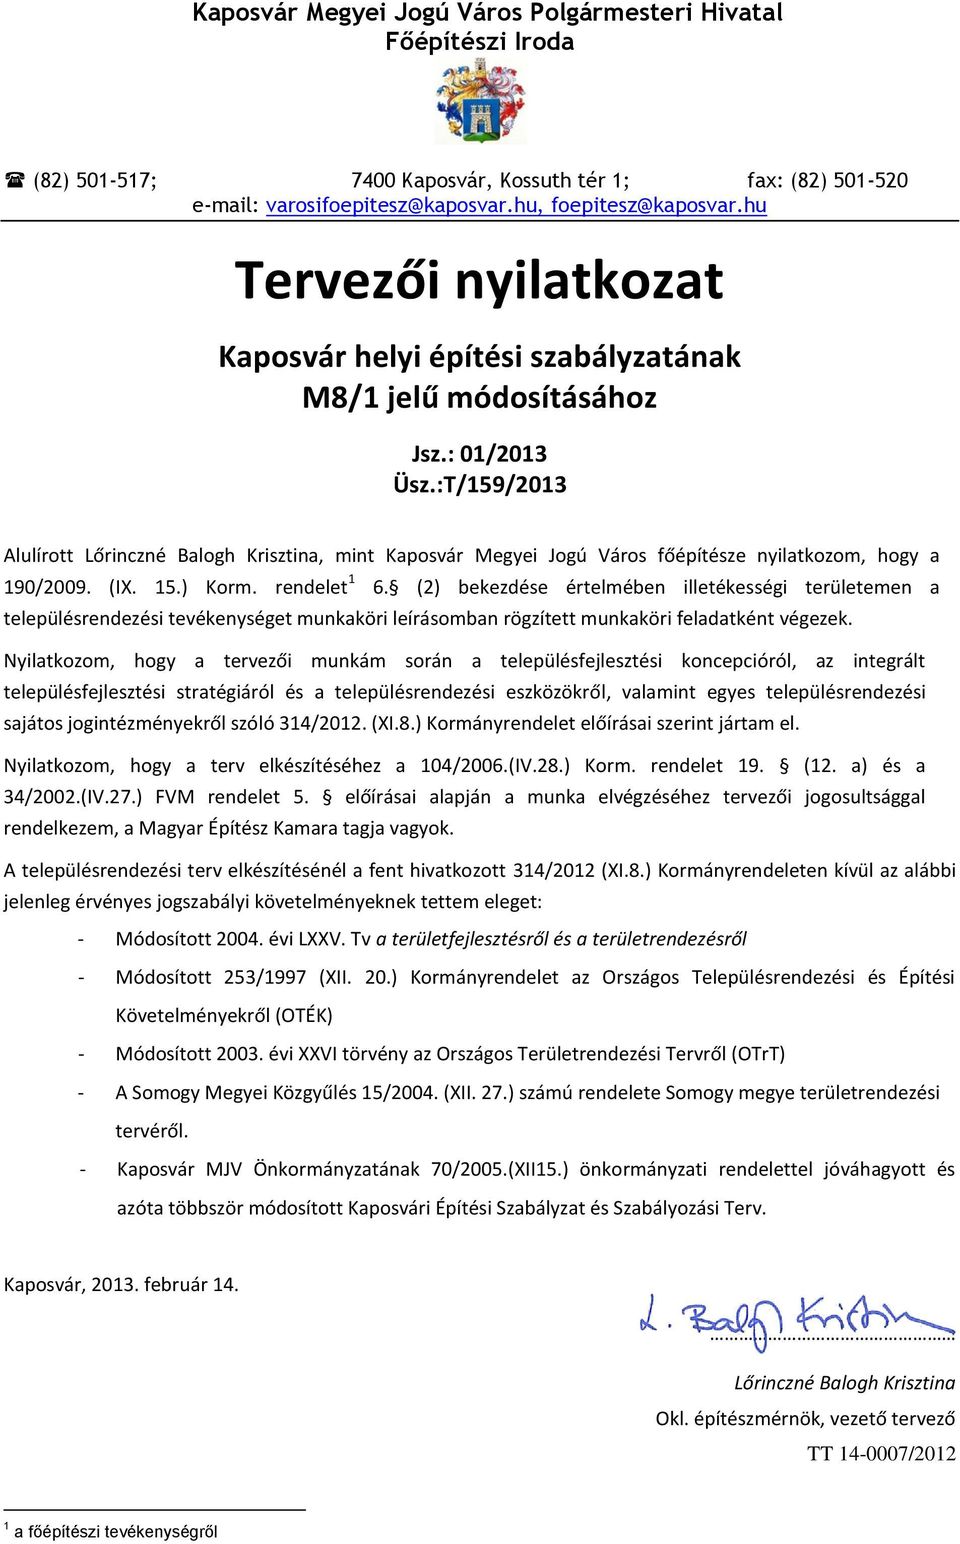 :T/159/2013 Alulírott Lőrinczné Balogh Krisztina, mint Kaposvár Megyei Jogú Város főépítésze nyilatkozom, hogy a 190/2009. (IX. 15.) Korm. rendelet 1 6.